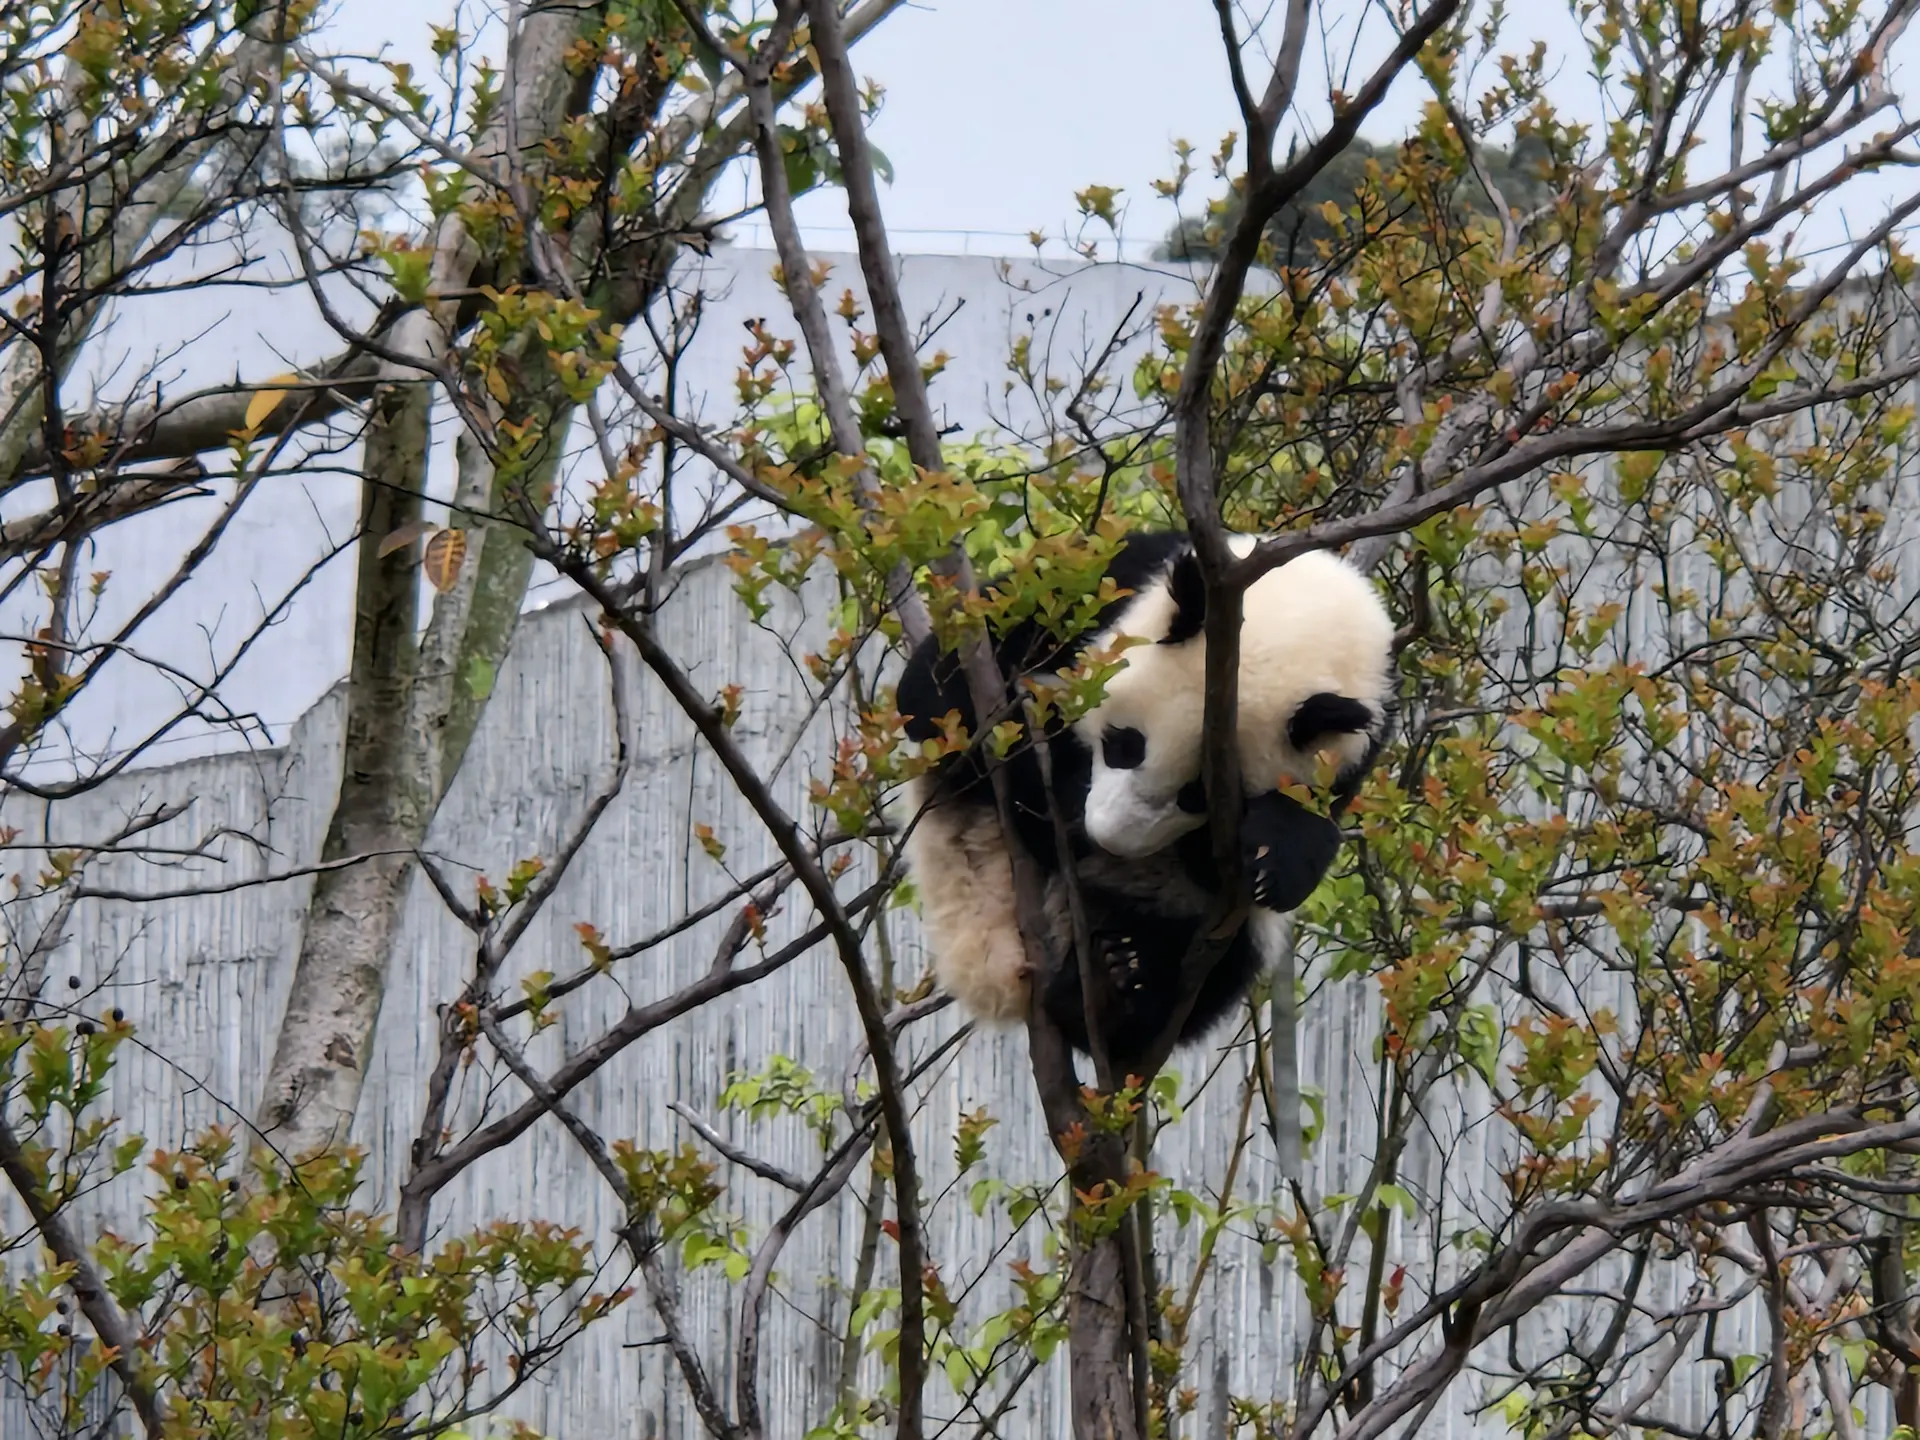 Un bébé panda est endormi au sommet d'un arbre, emmêlé dans ses branches.